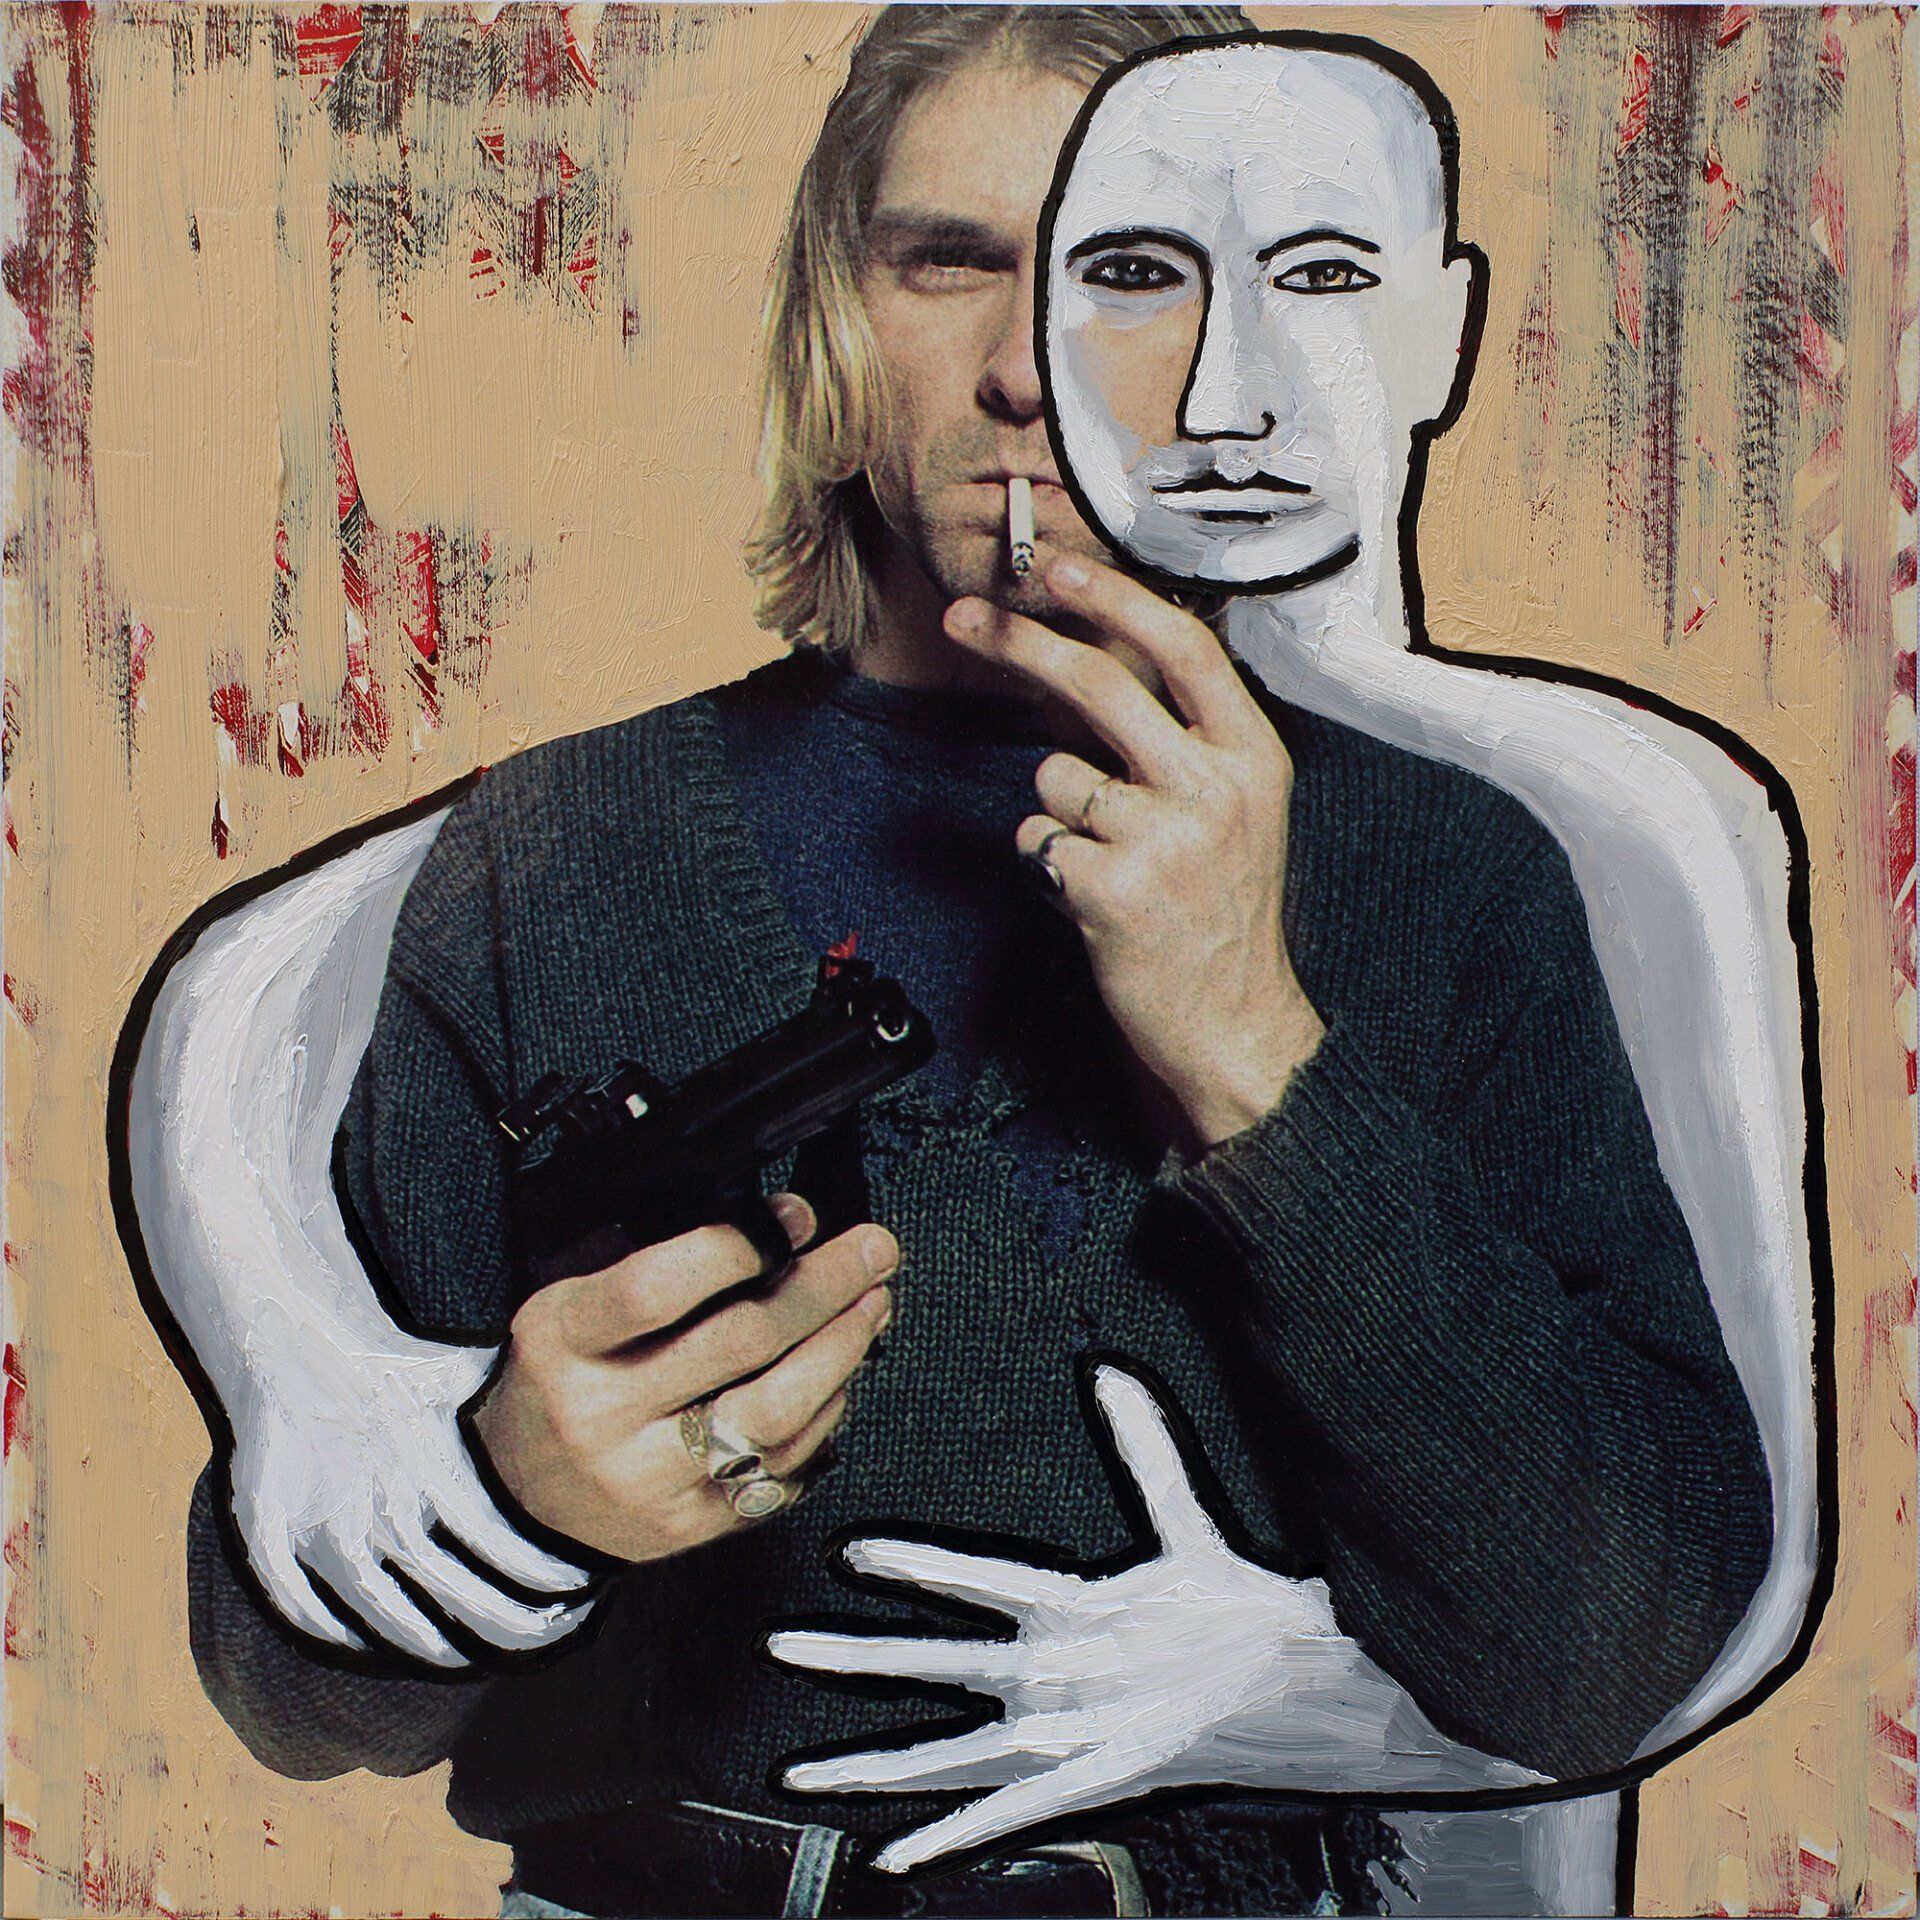 „Ghost Rider No. 15“ (Kurt Cobain / Nirvana) by Sebastian Bieniek (B1EN1EK), 2019. Oil on original LP cover, 31,5 cm. x 30 cm. Bieniek-Paint (overpainted medium) from the oeuvre of Bieniekface by the artist.